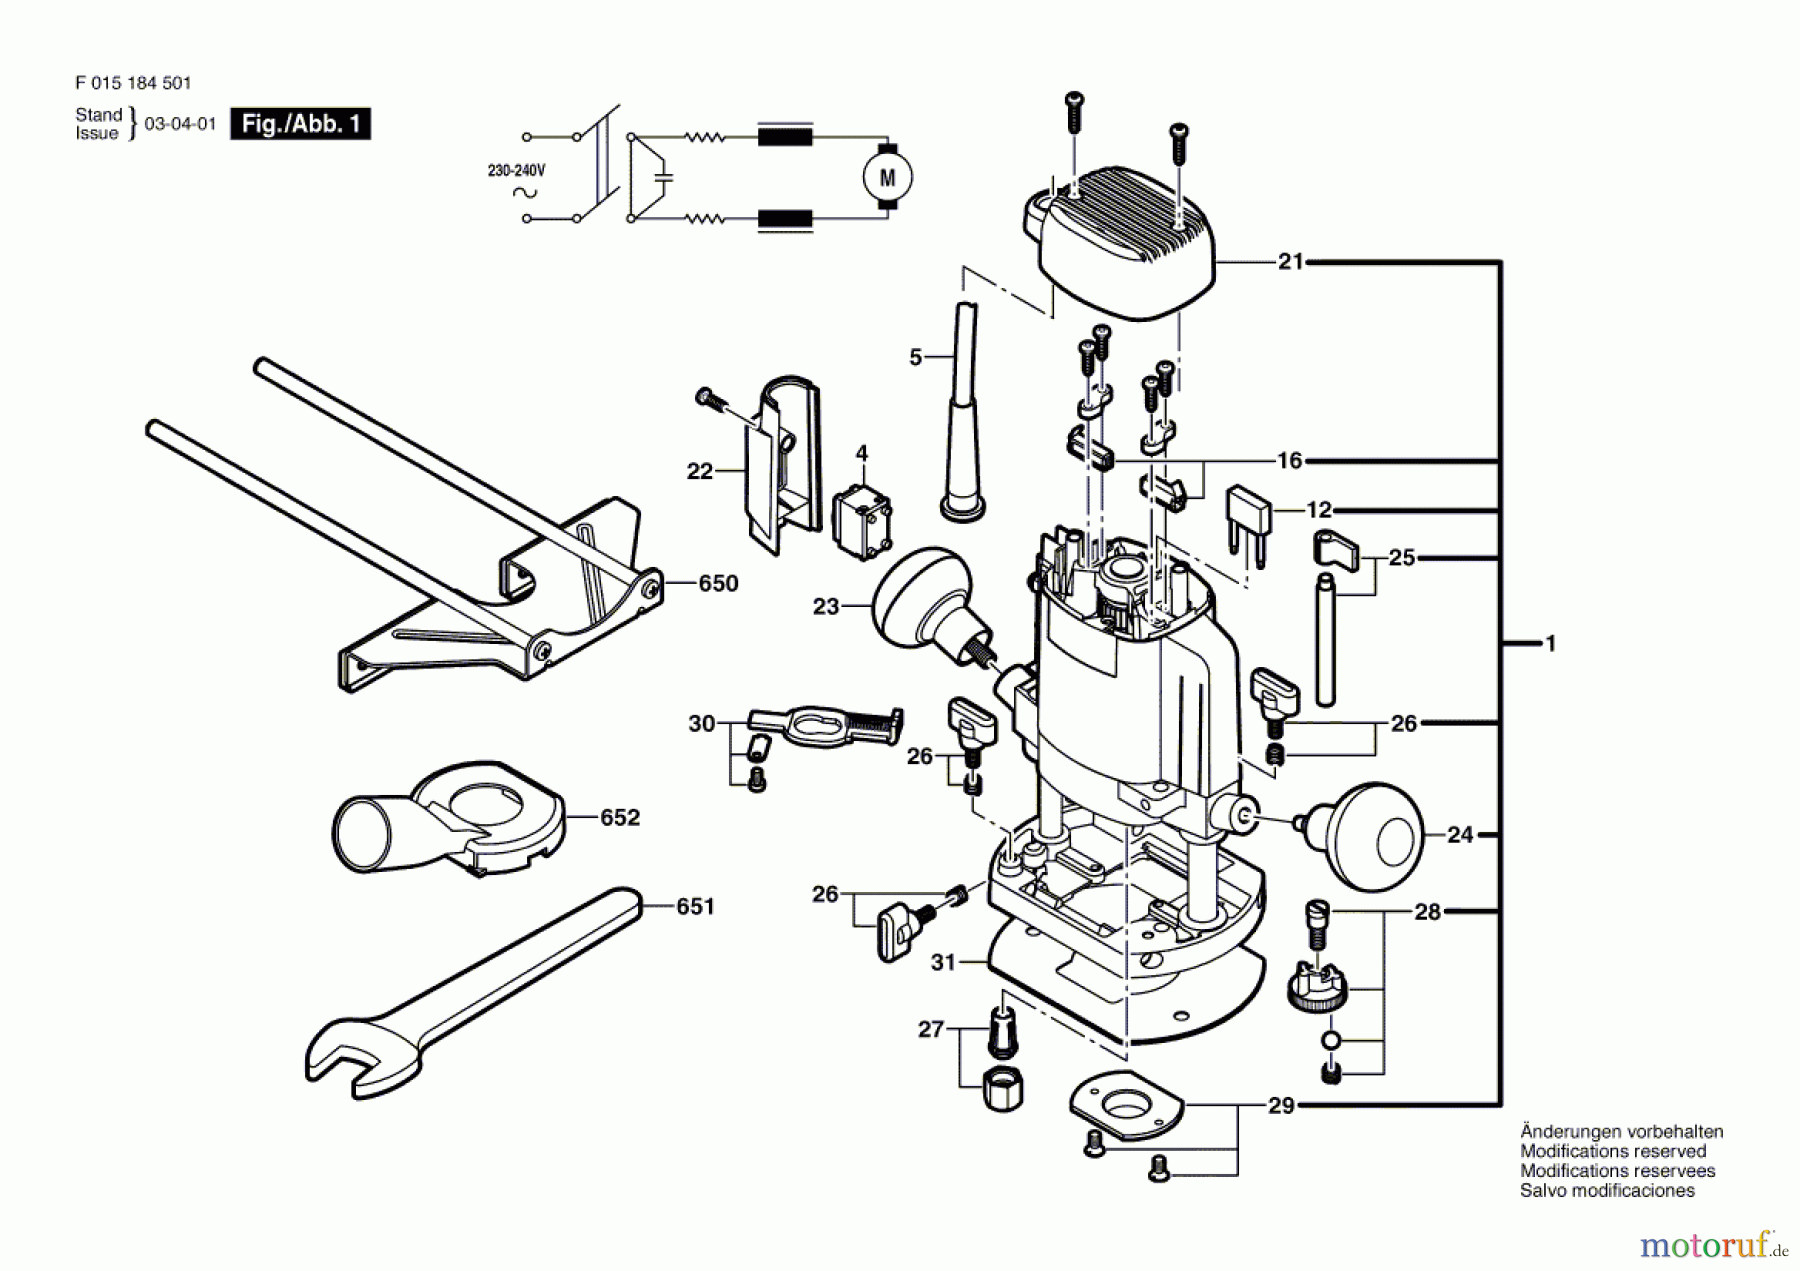  Bosch Werkzeug Oberfräse 1845 Seite 1